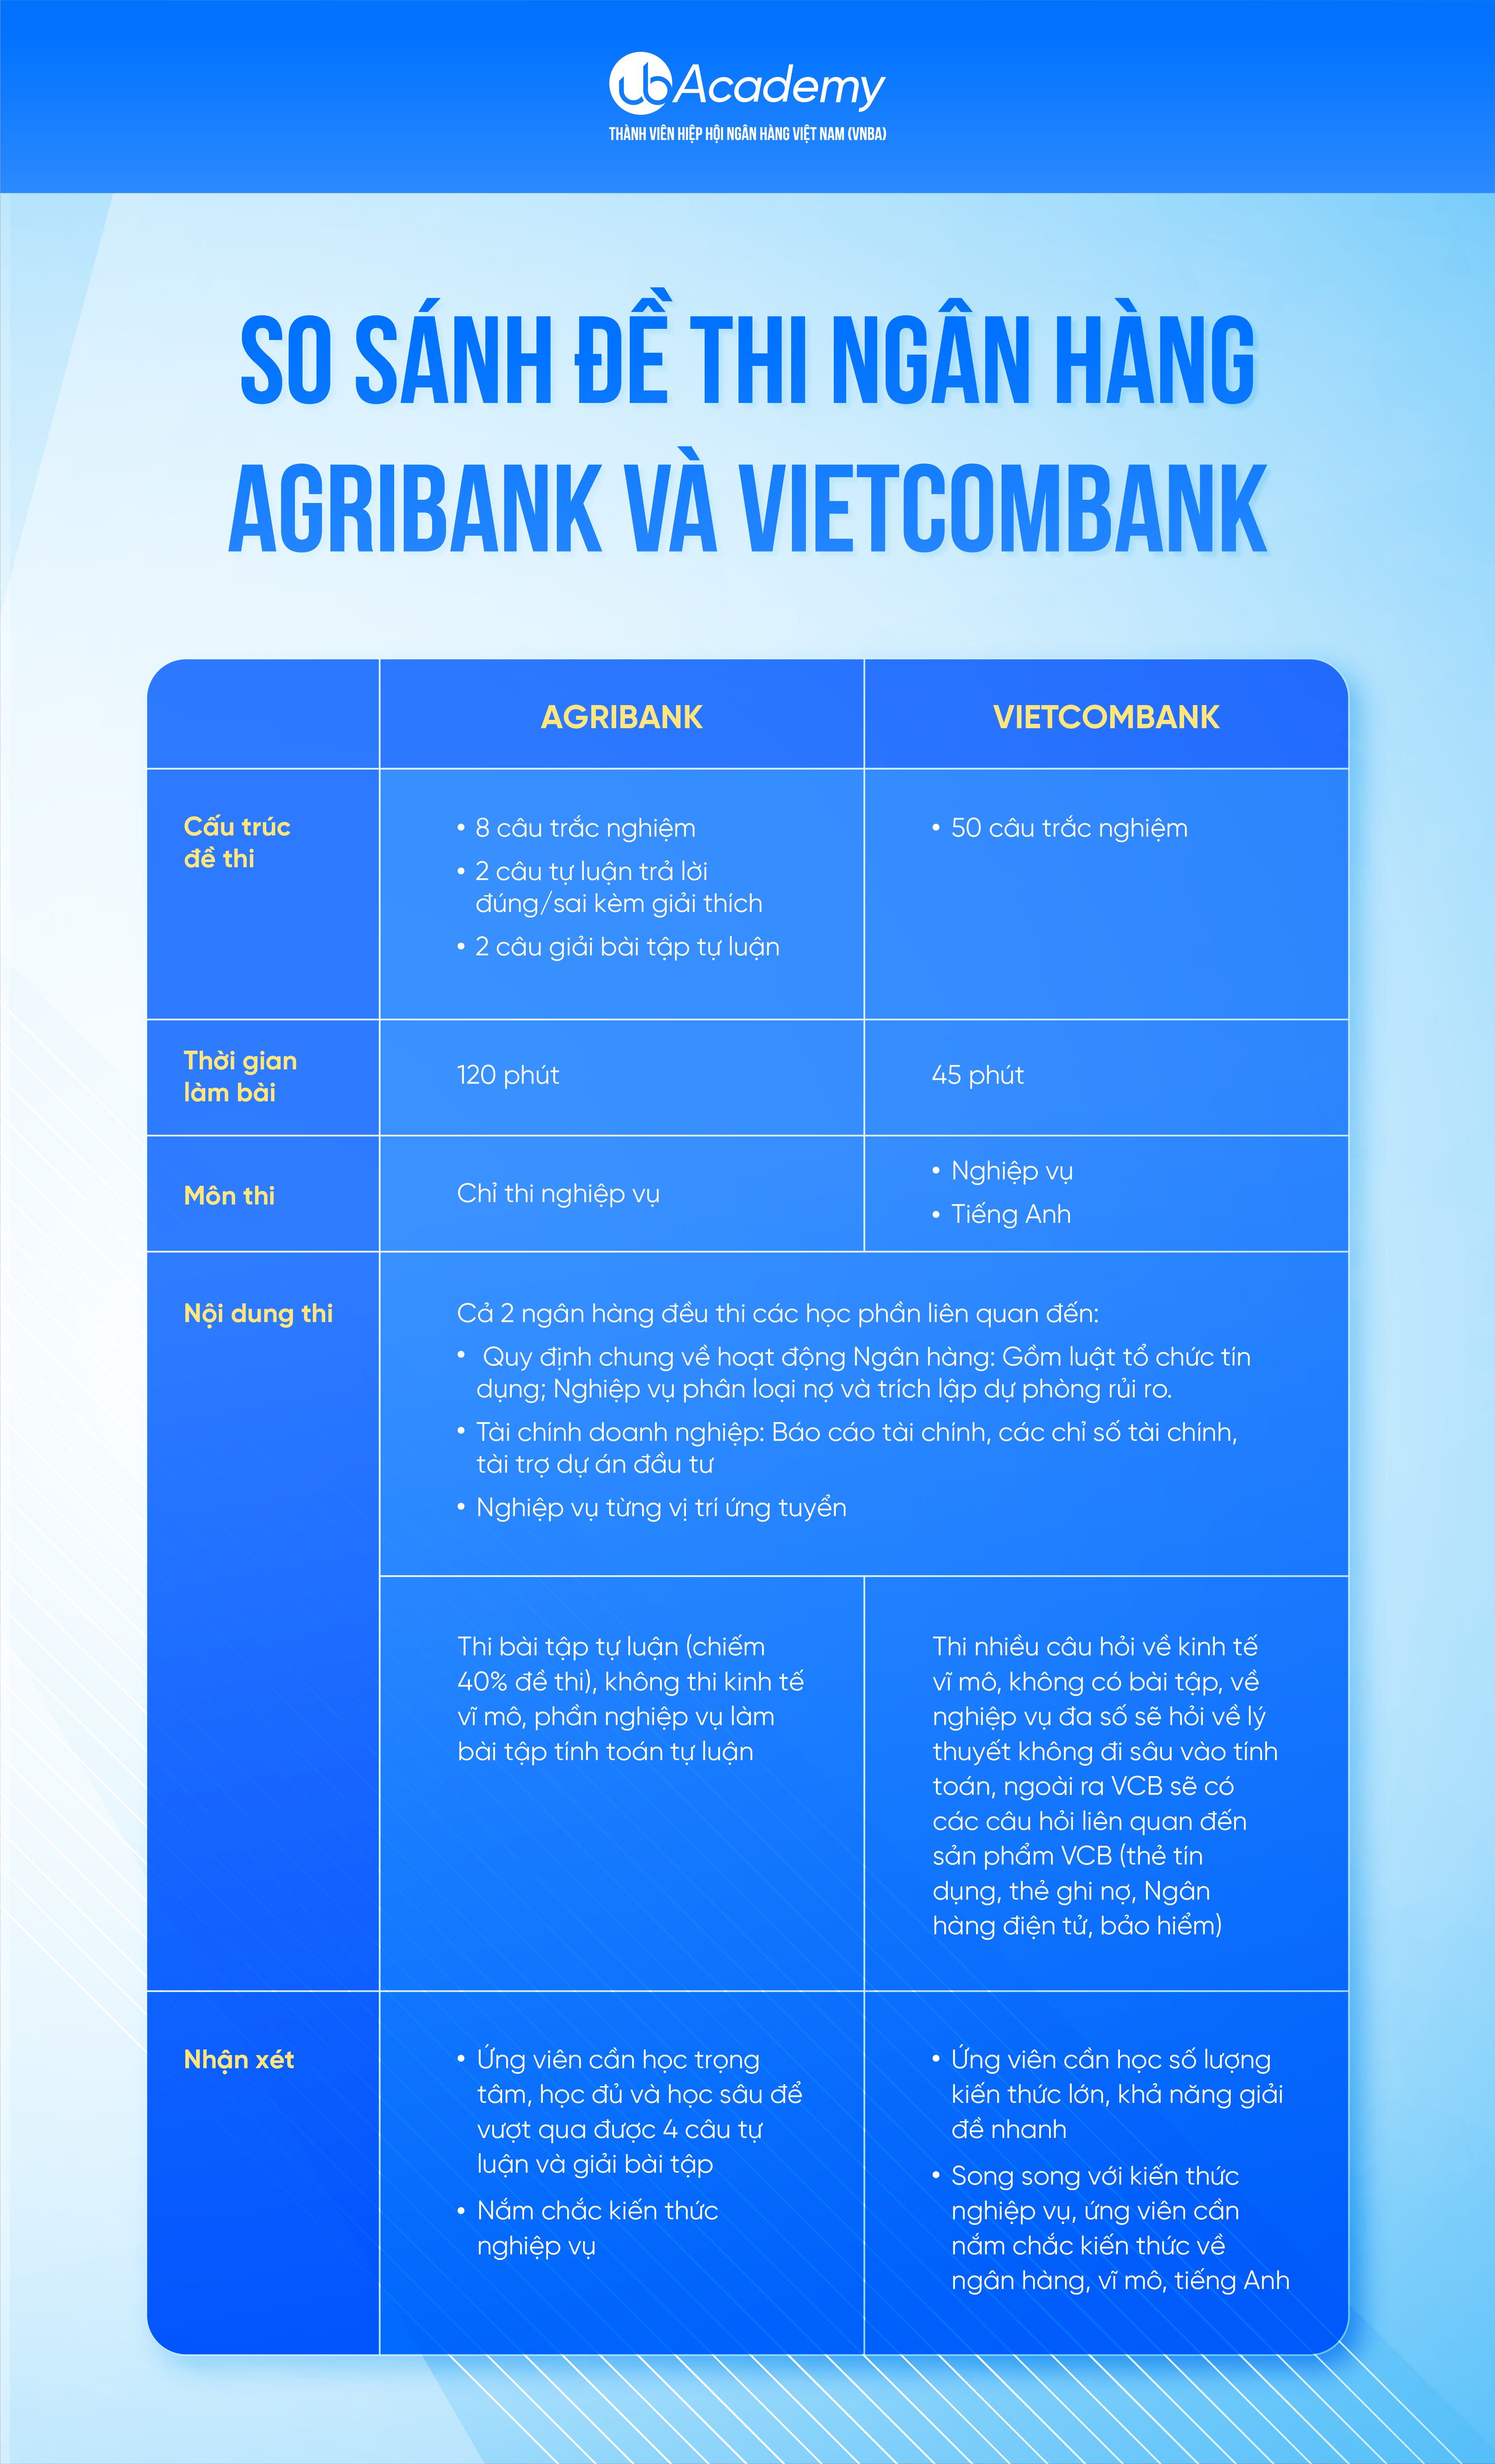 So sánh đề thi ngân hàng Agribank và ngân hàng Vietcombank